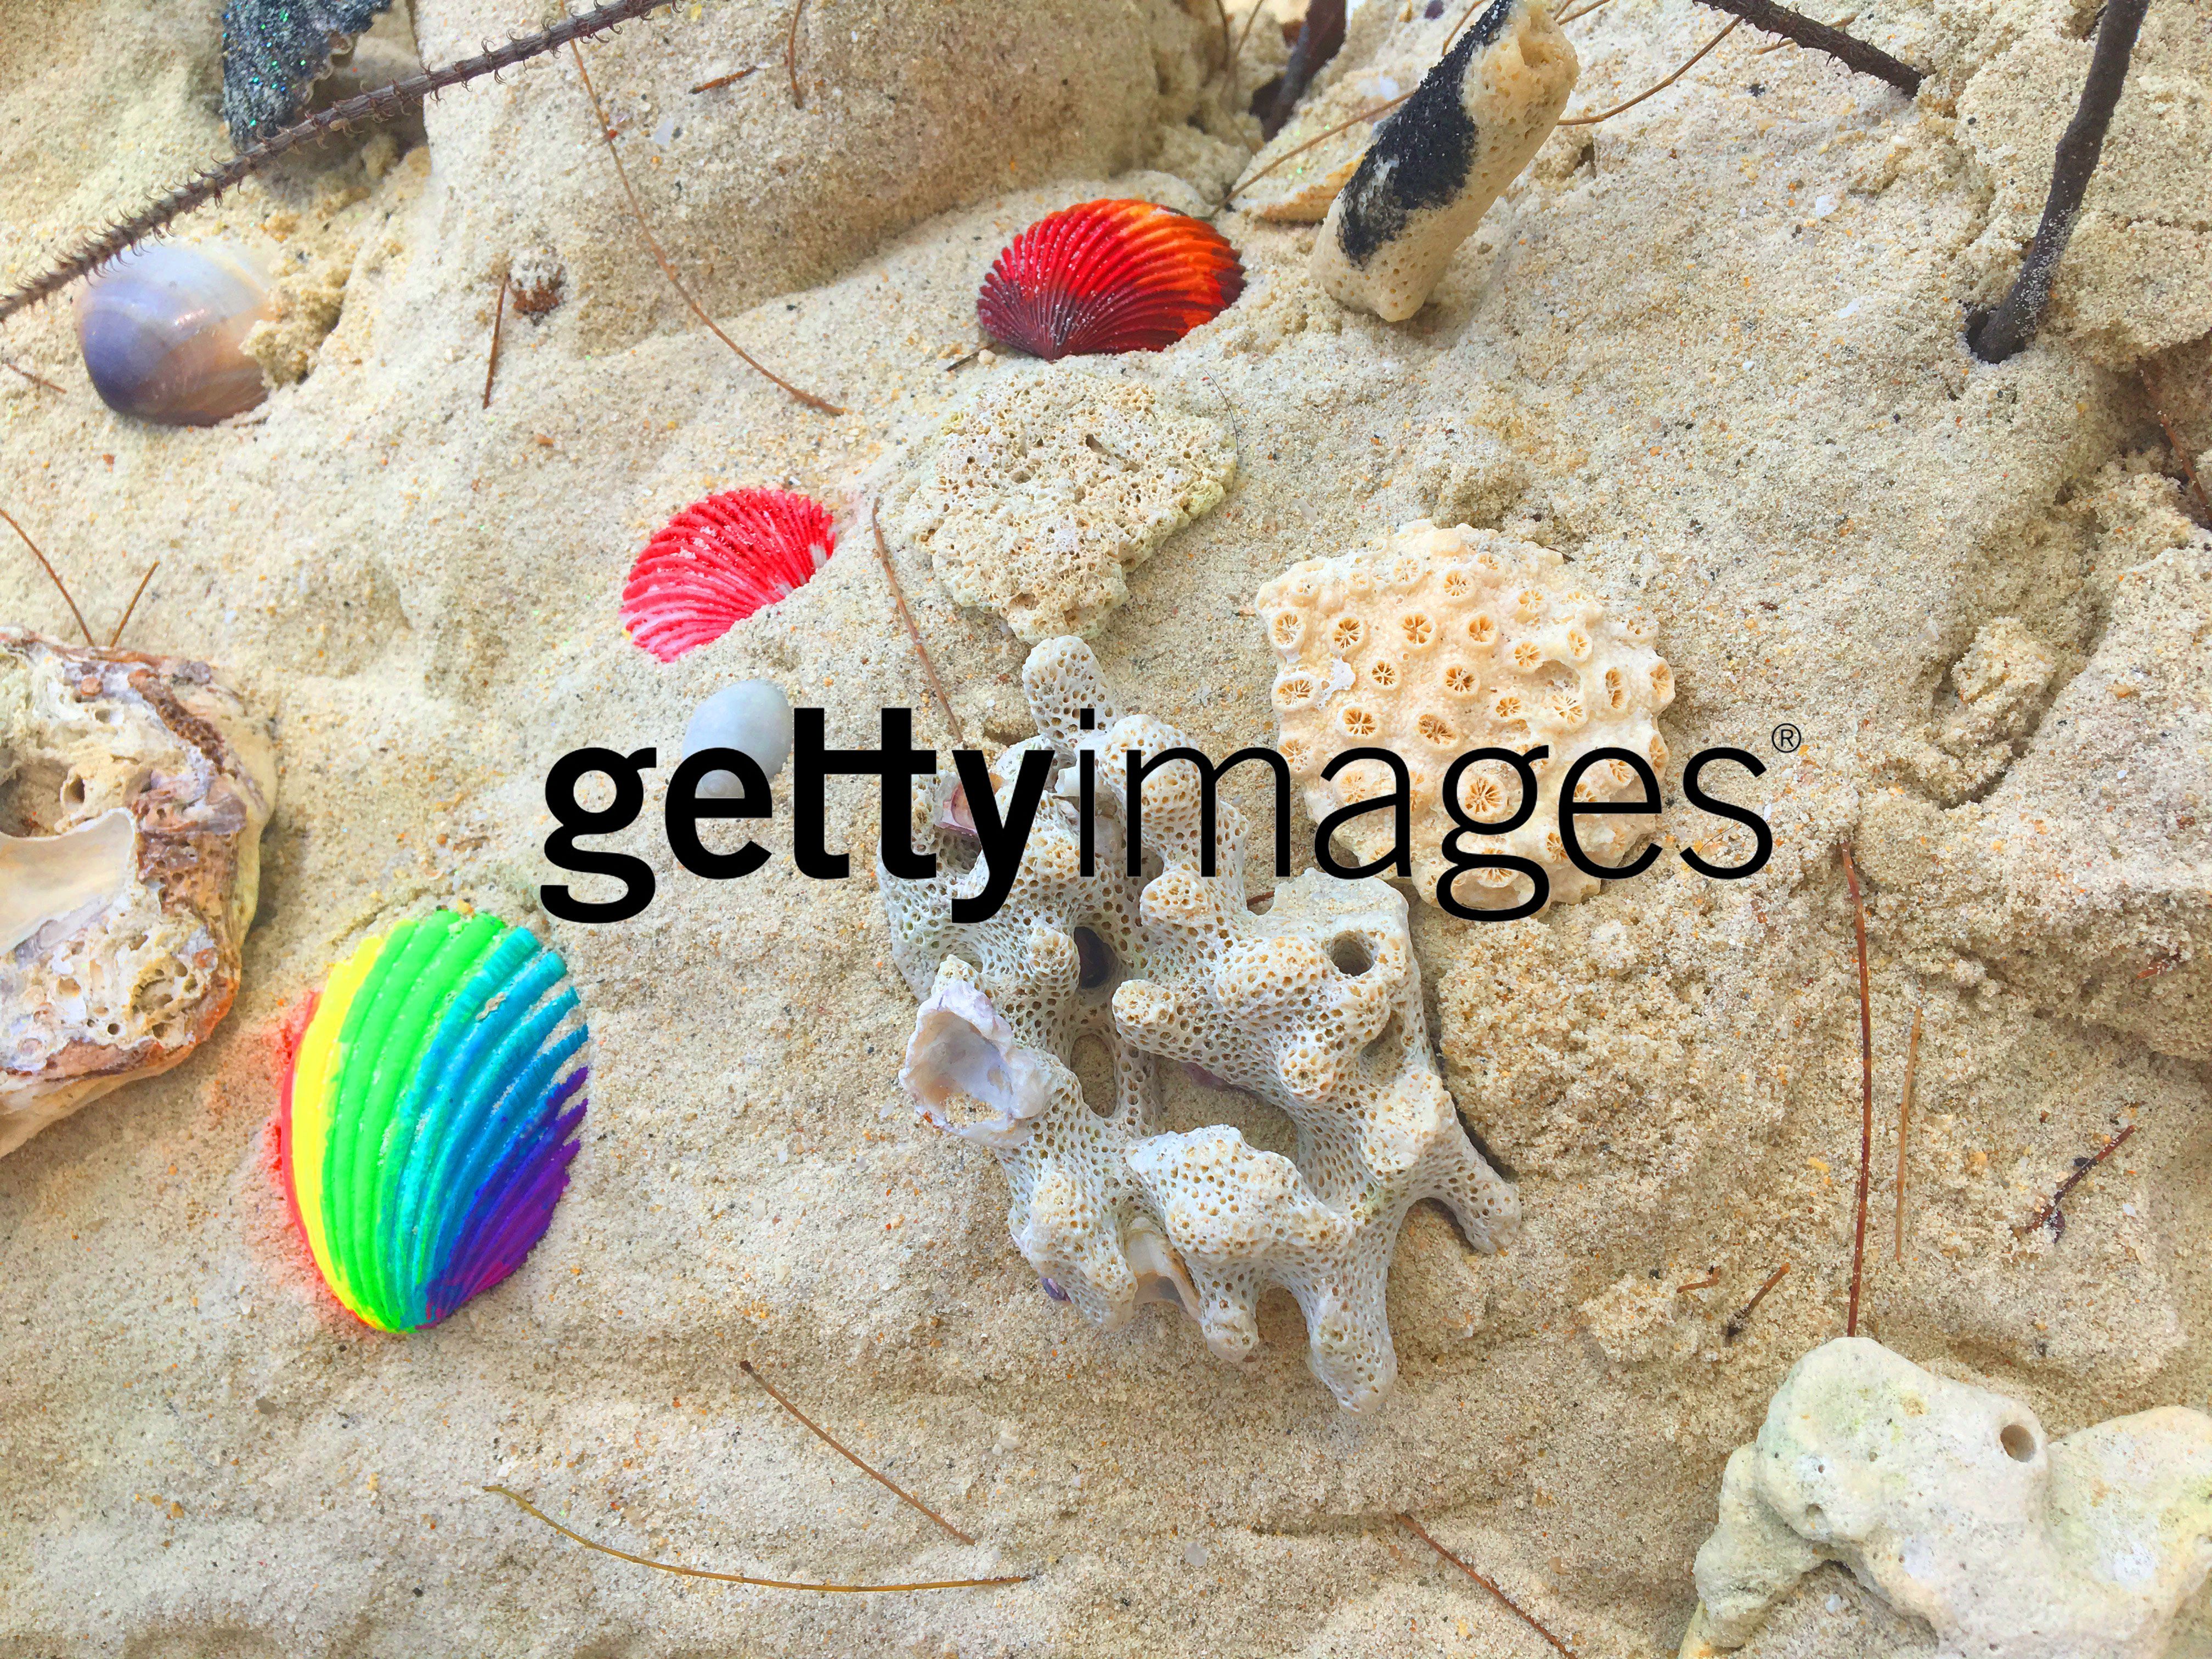 Getty Images Watermerk Verwijderaar | Gratis download.